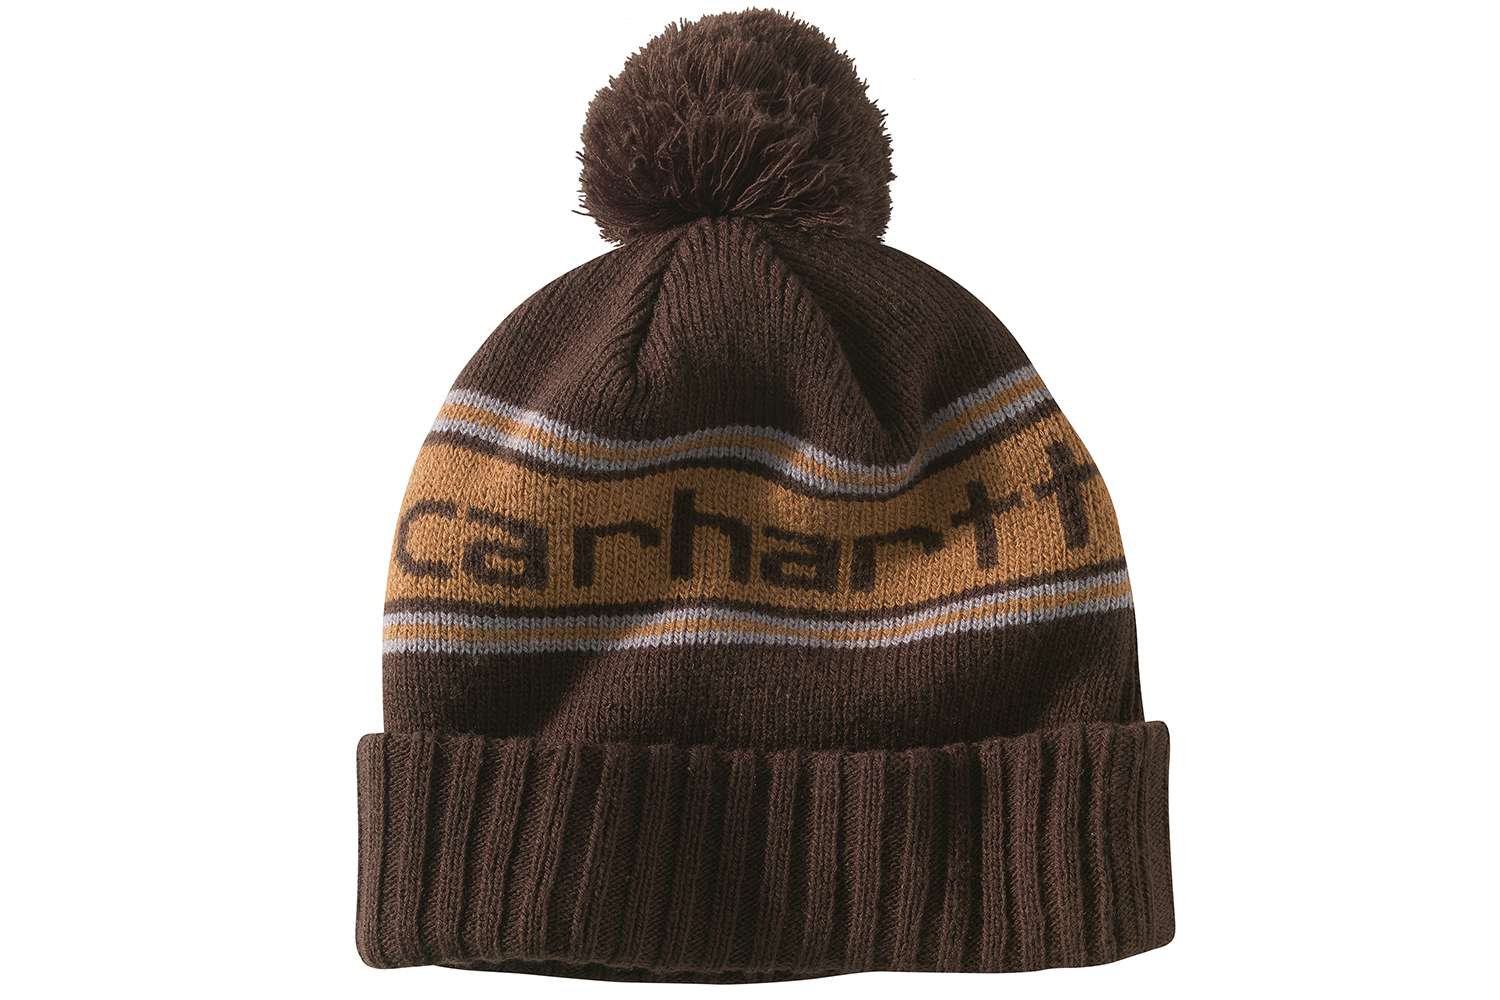 Carhartt Men's, Pond Hockey Knit Hat, $19.99